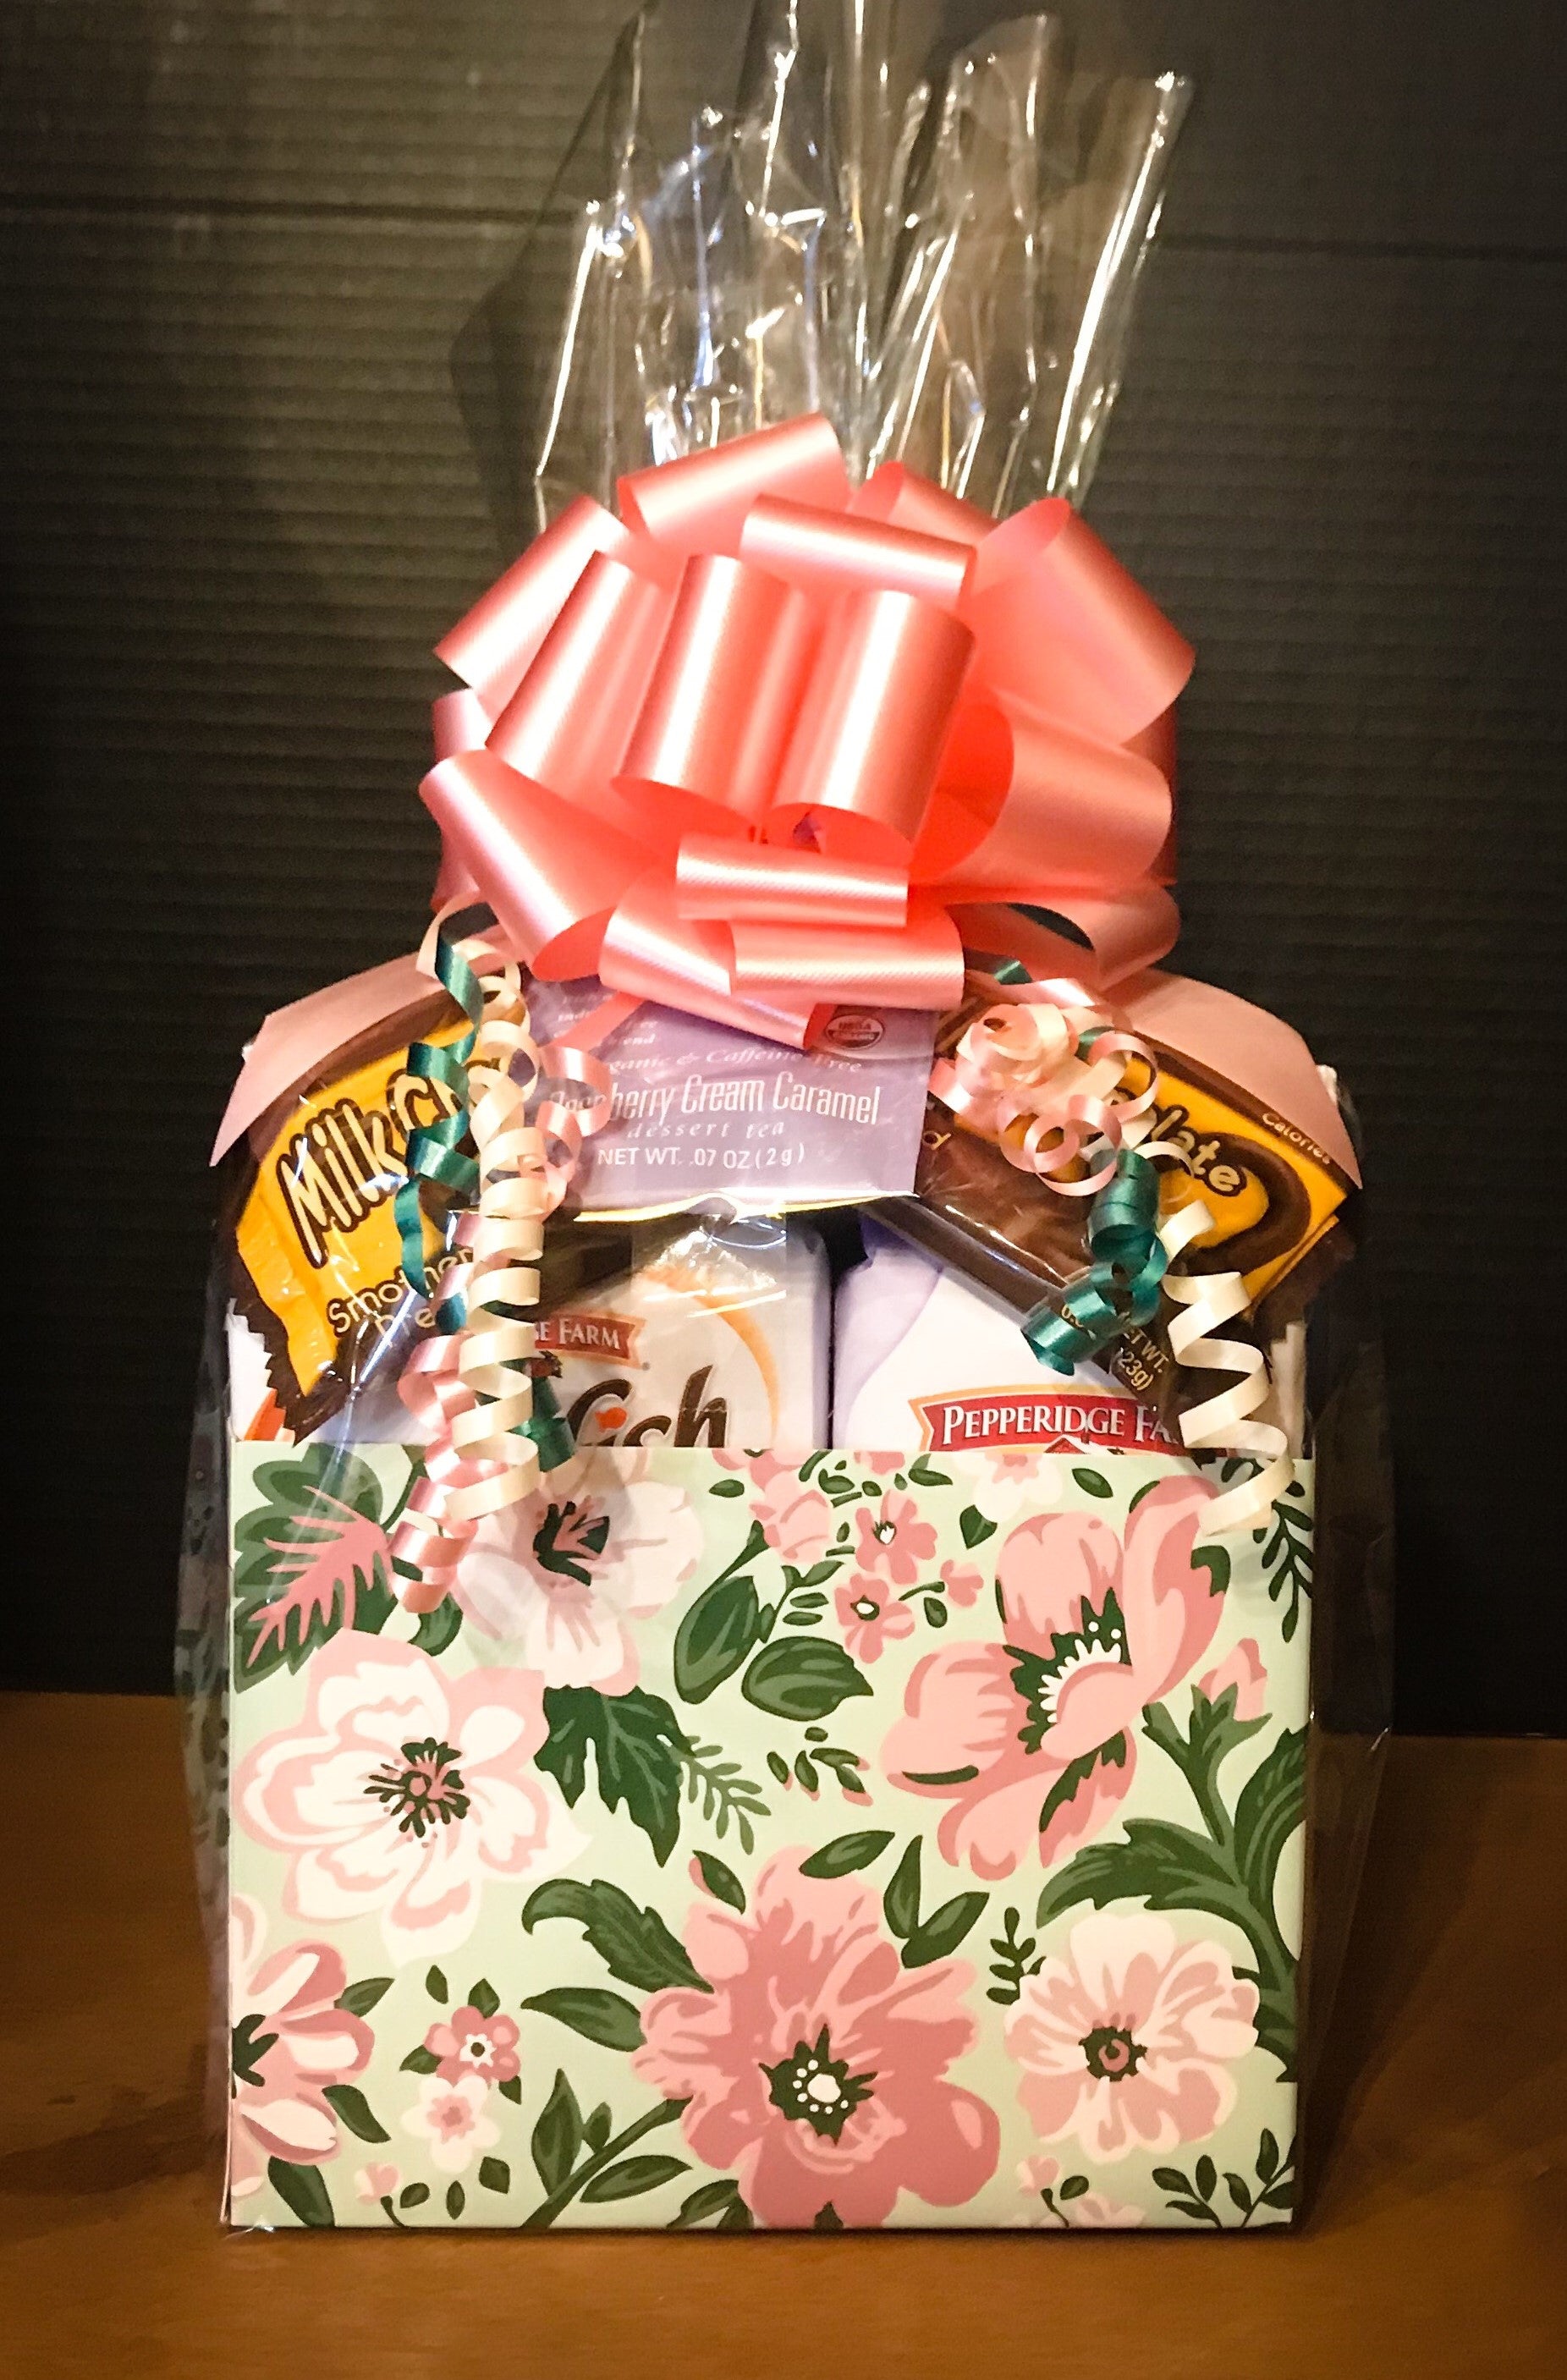 Flower Gift Box